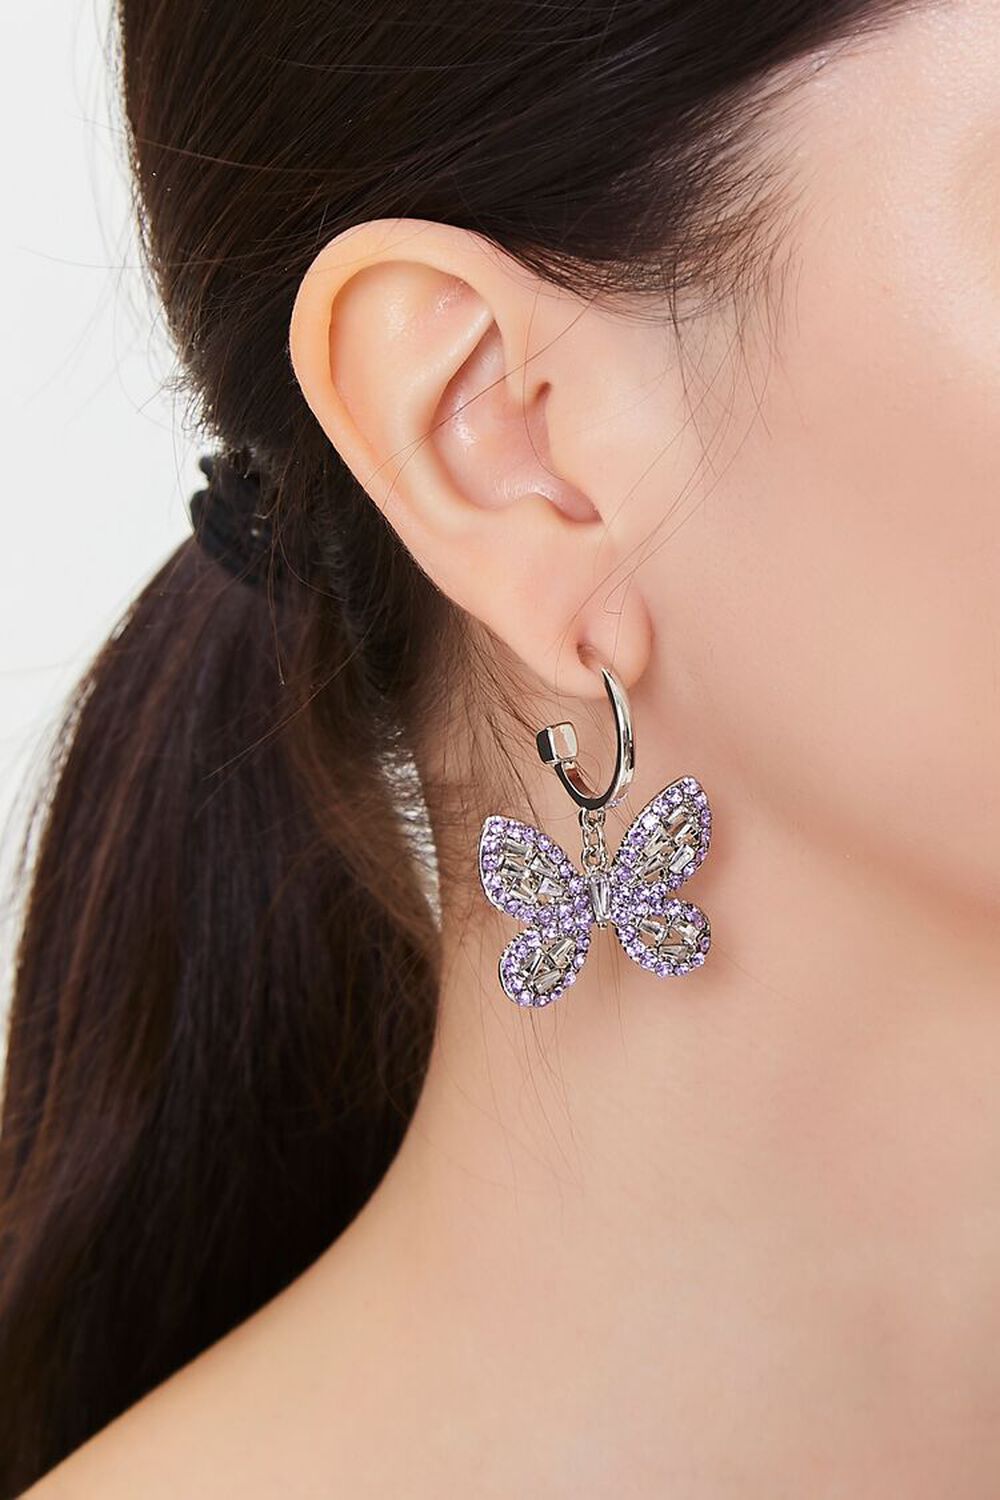 SILVER/PURPLE Rhinestone Butterfly Drop Earrings, image 1